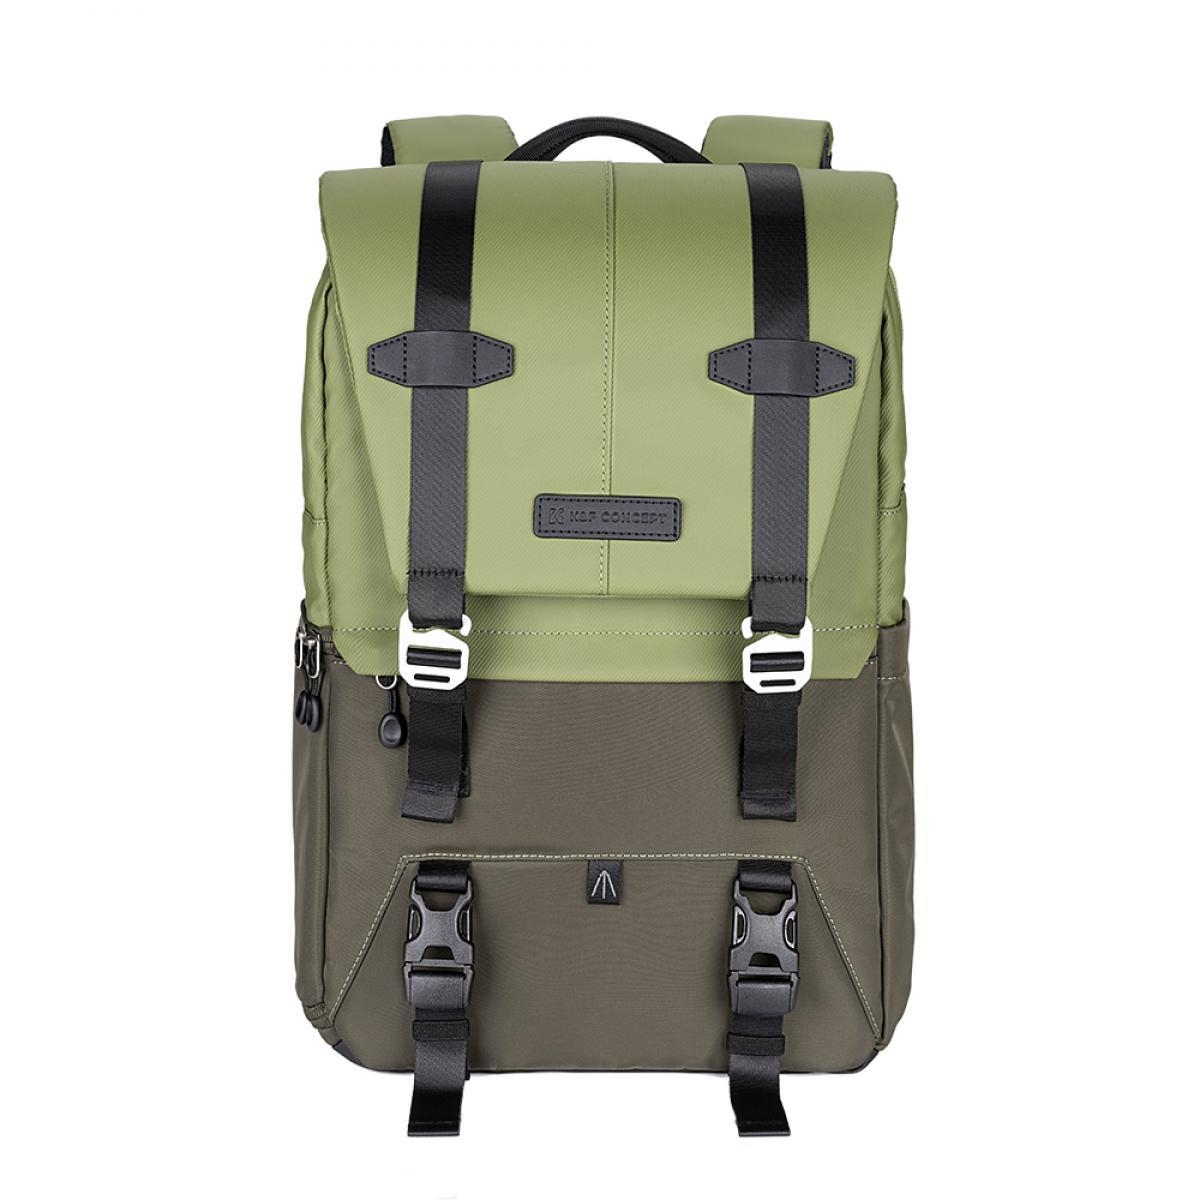 K&F CONCEPT 13.087AV Beta Backpack 20L